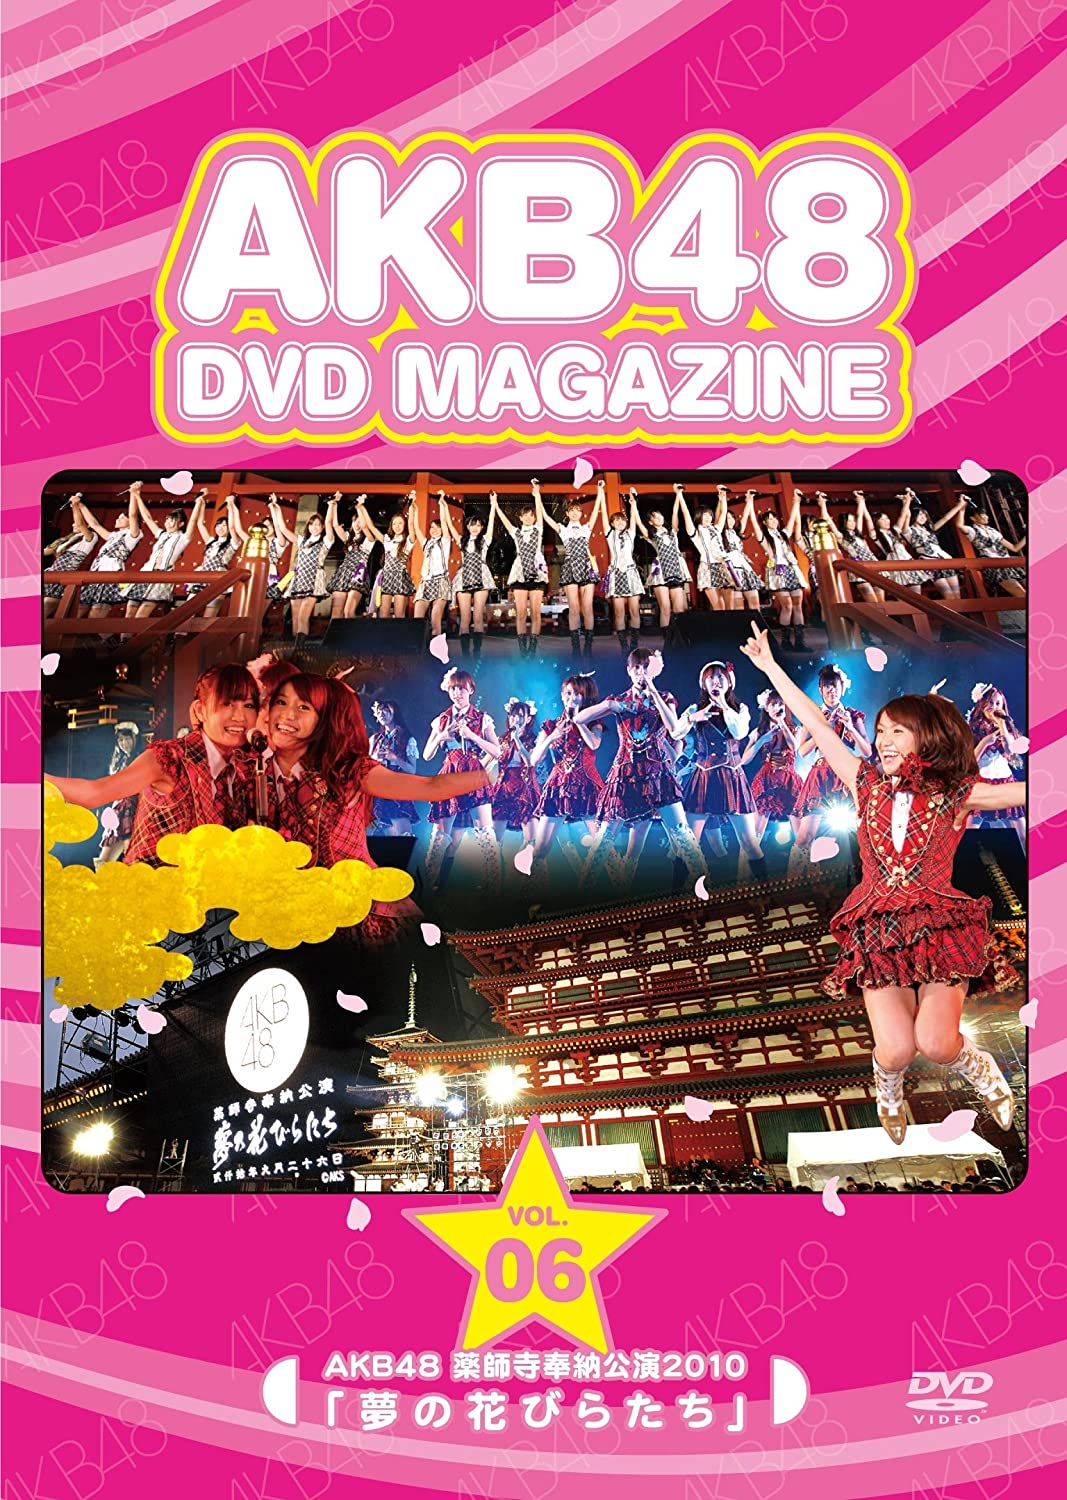 AKB48 DVD MAGAZINE VOL.6 :: AKB48 Yakushiji dedication performance